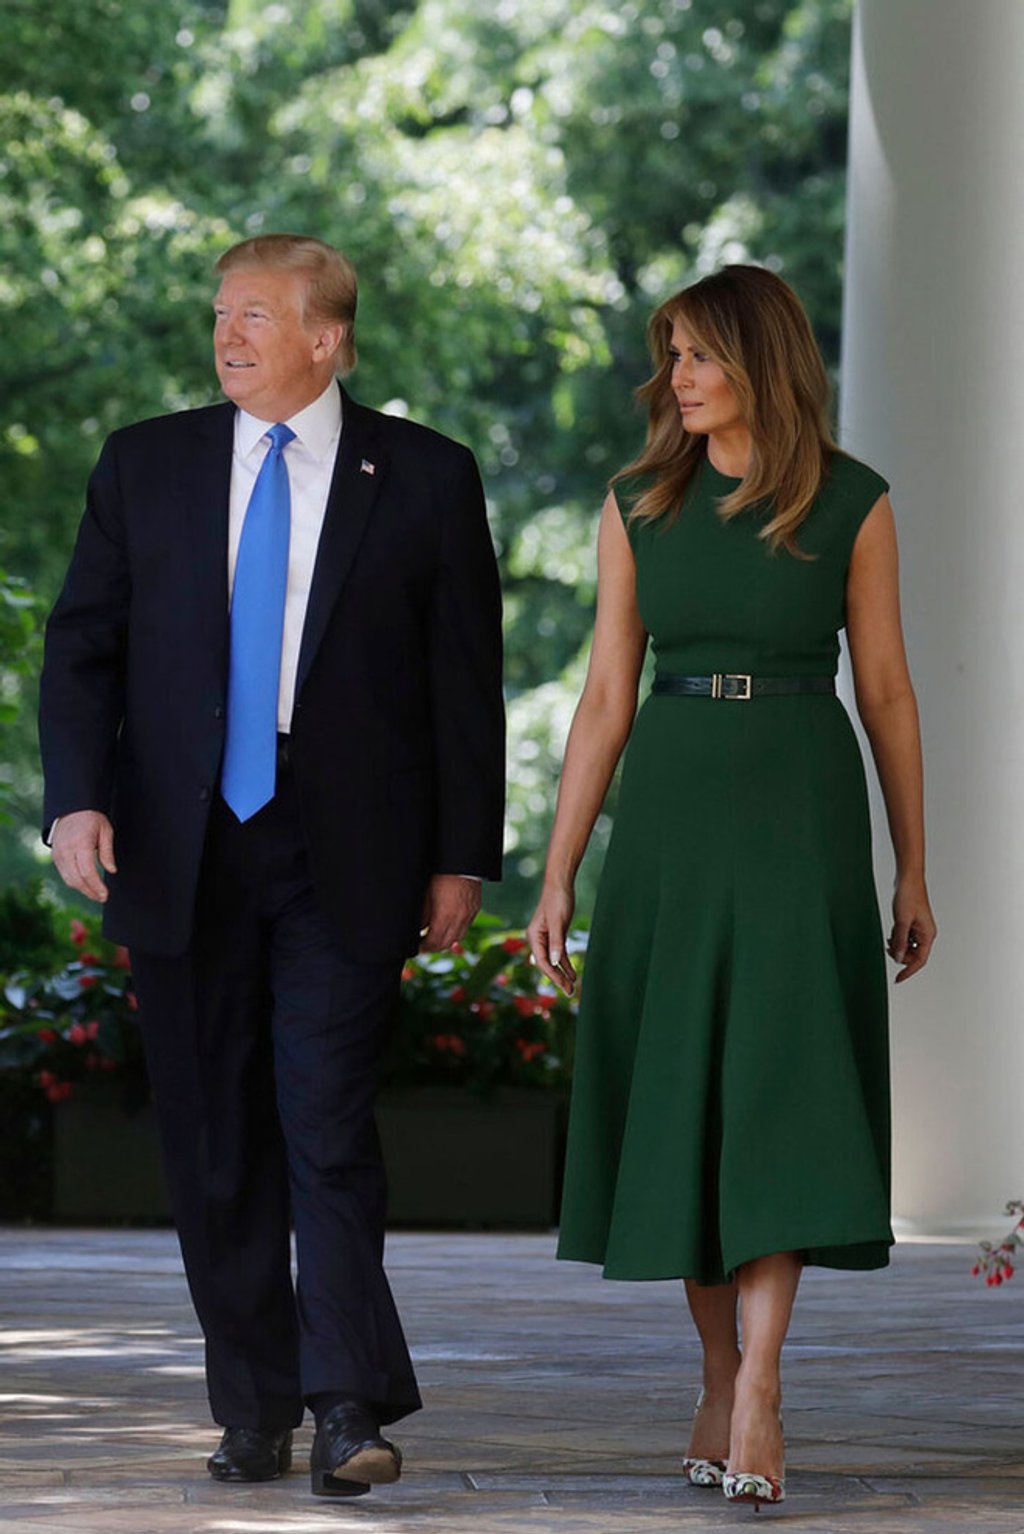 Bà Melania Trump có một bộ sưu tập trang phục đủ sắc thái màu xanh lá, từ những chiếc đầm ăn điểm tuyệt đối cho tới vài mẫu thiết kế không được đẹp lắm...